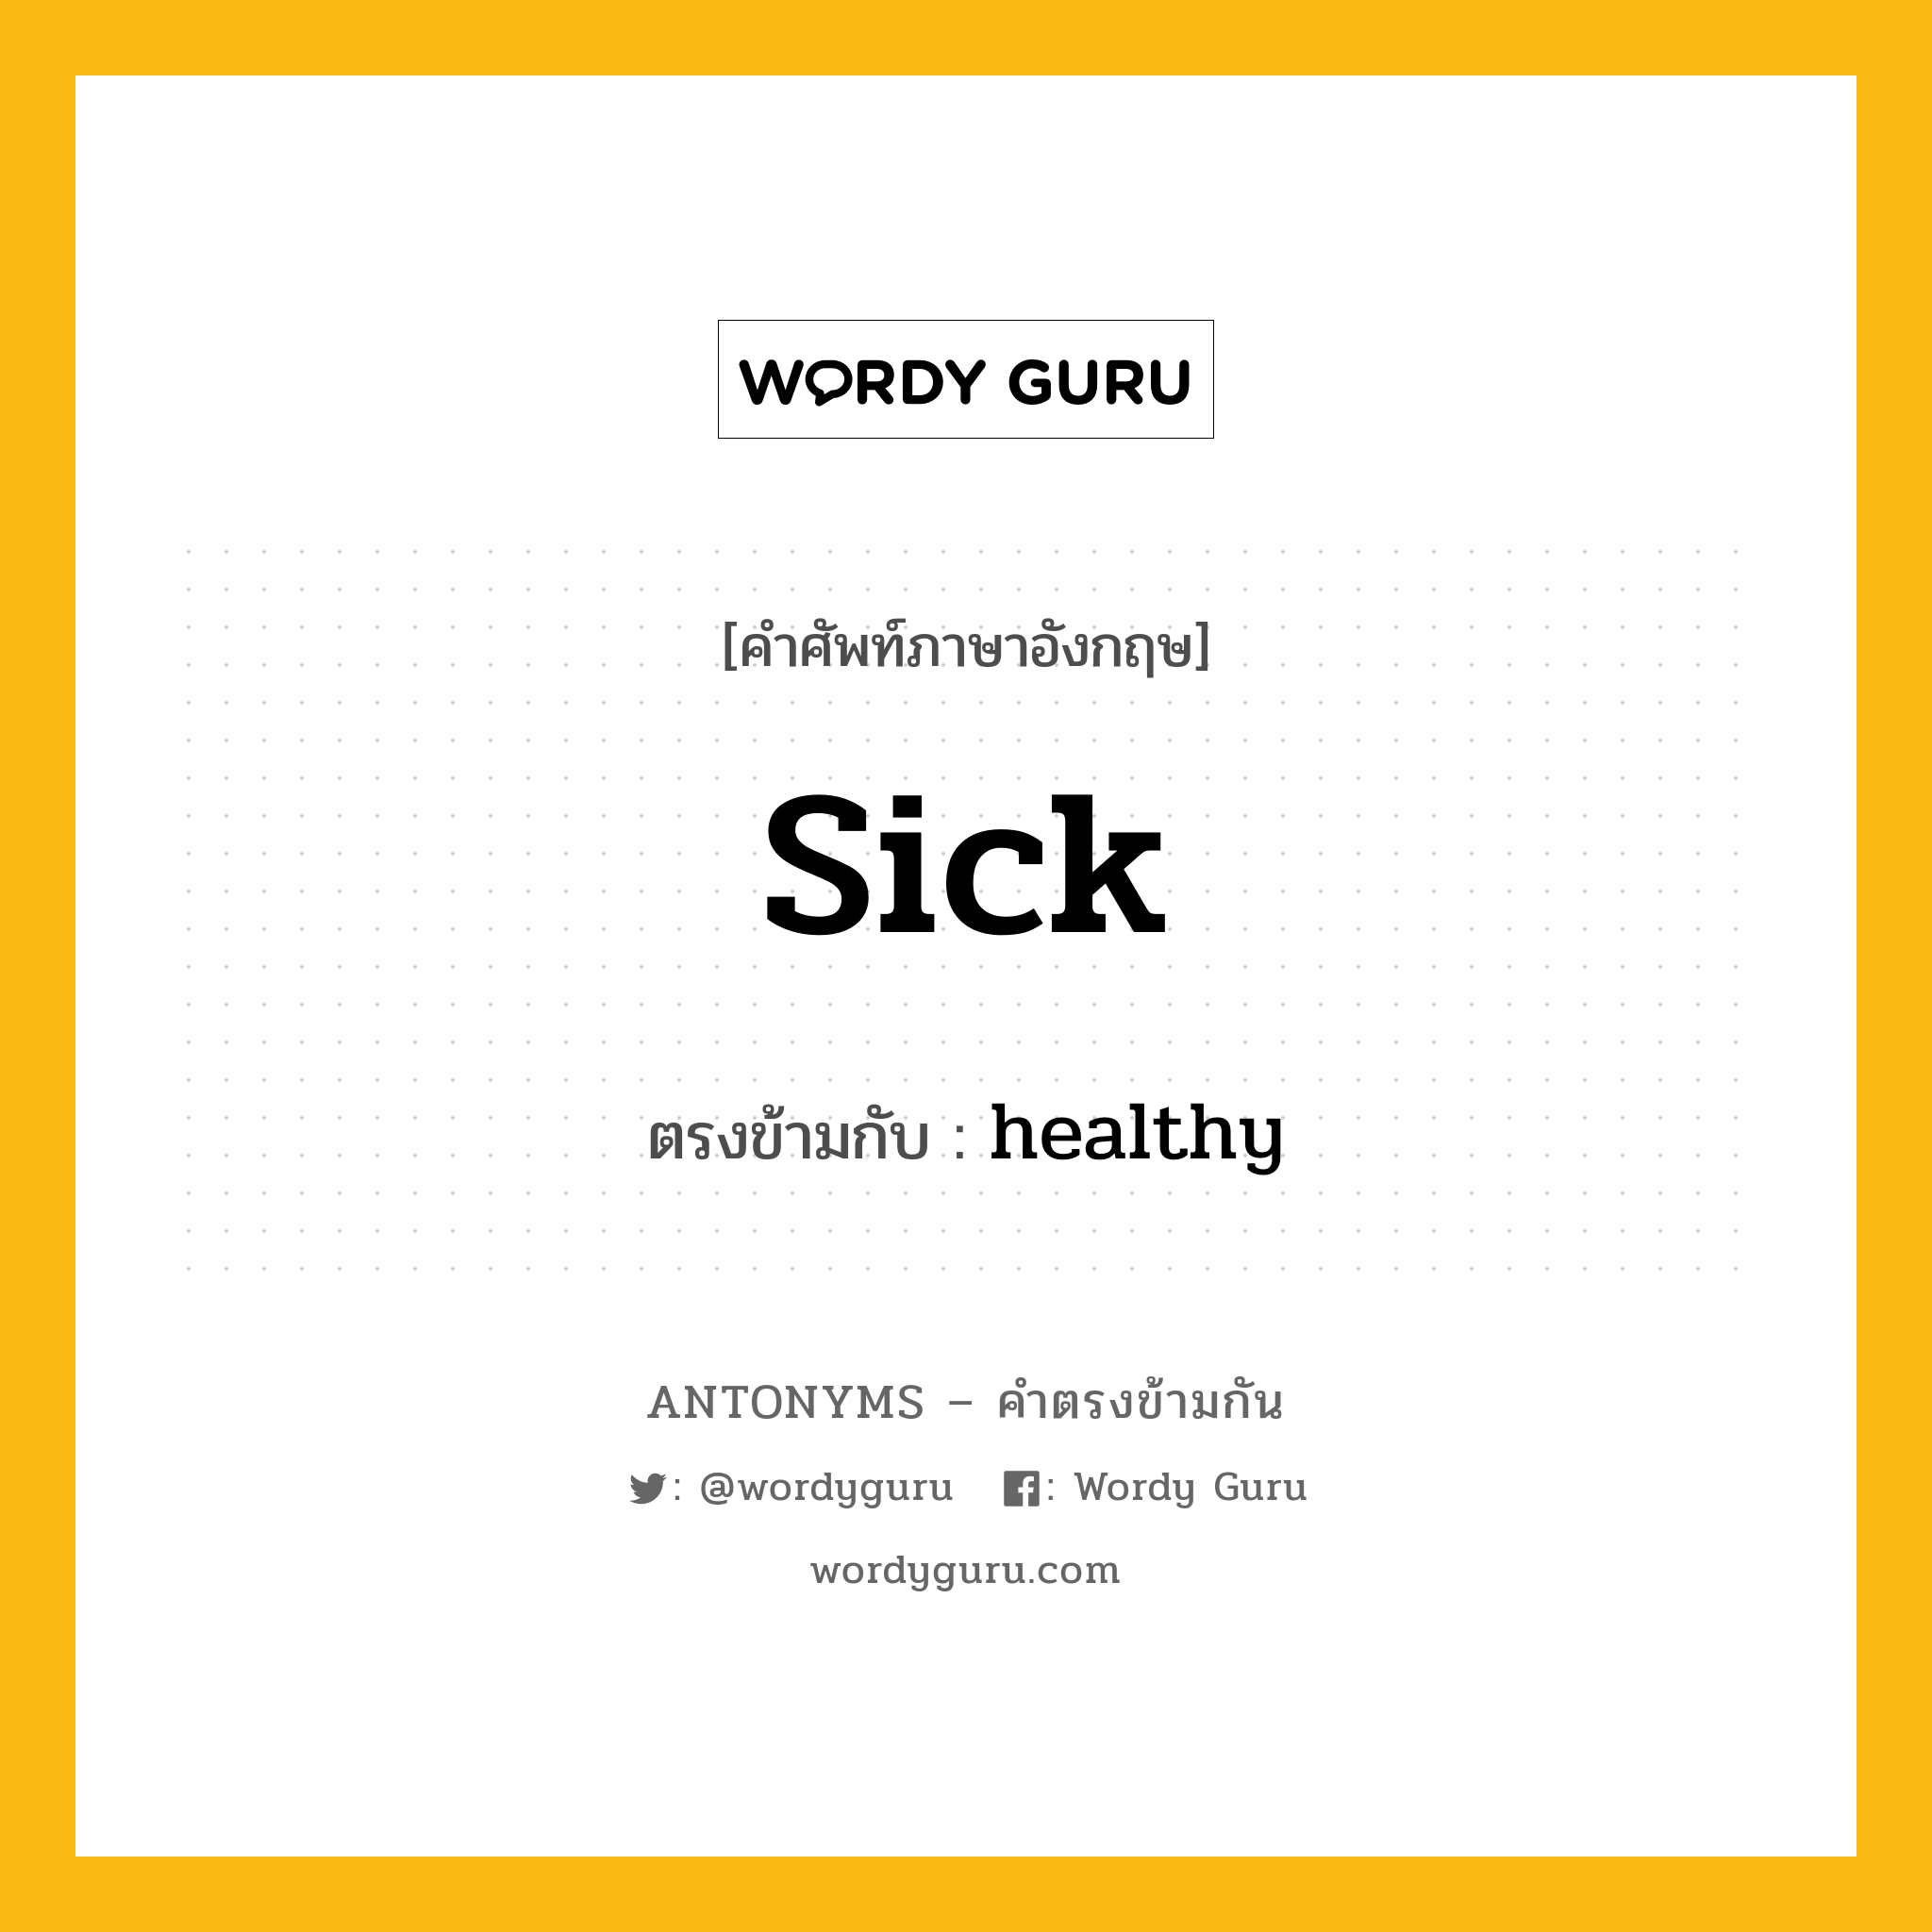 sick เป็นคำตรงข้ามกับคำไหนบ้าง?, คำศัพท์ภาษาอังกฤษ sick ตรงข้ามกับ healthy หมวด healthy